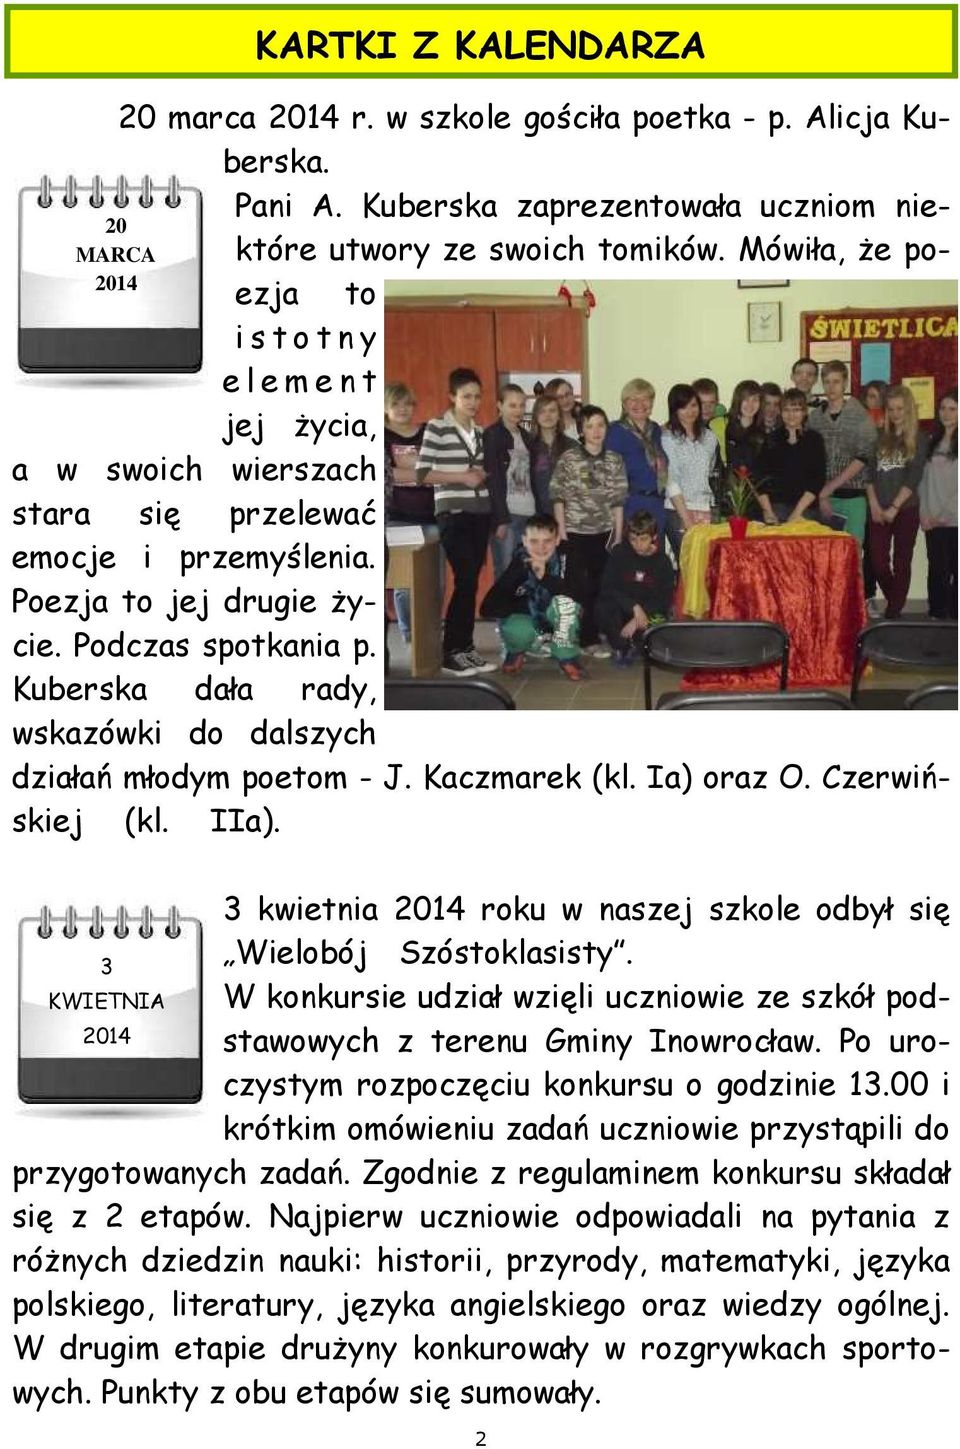 Kuberska dała rady, wskazówki do dalszych działań młodym poetom - J. Kaczmarek (kl. Ia) oraz O. Czerwińskiej (kl. IIa). 3 kwietnia 2014 roku w naszej szkole odbył się 3 Wielobój Szóstoklasisty.